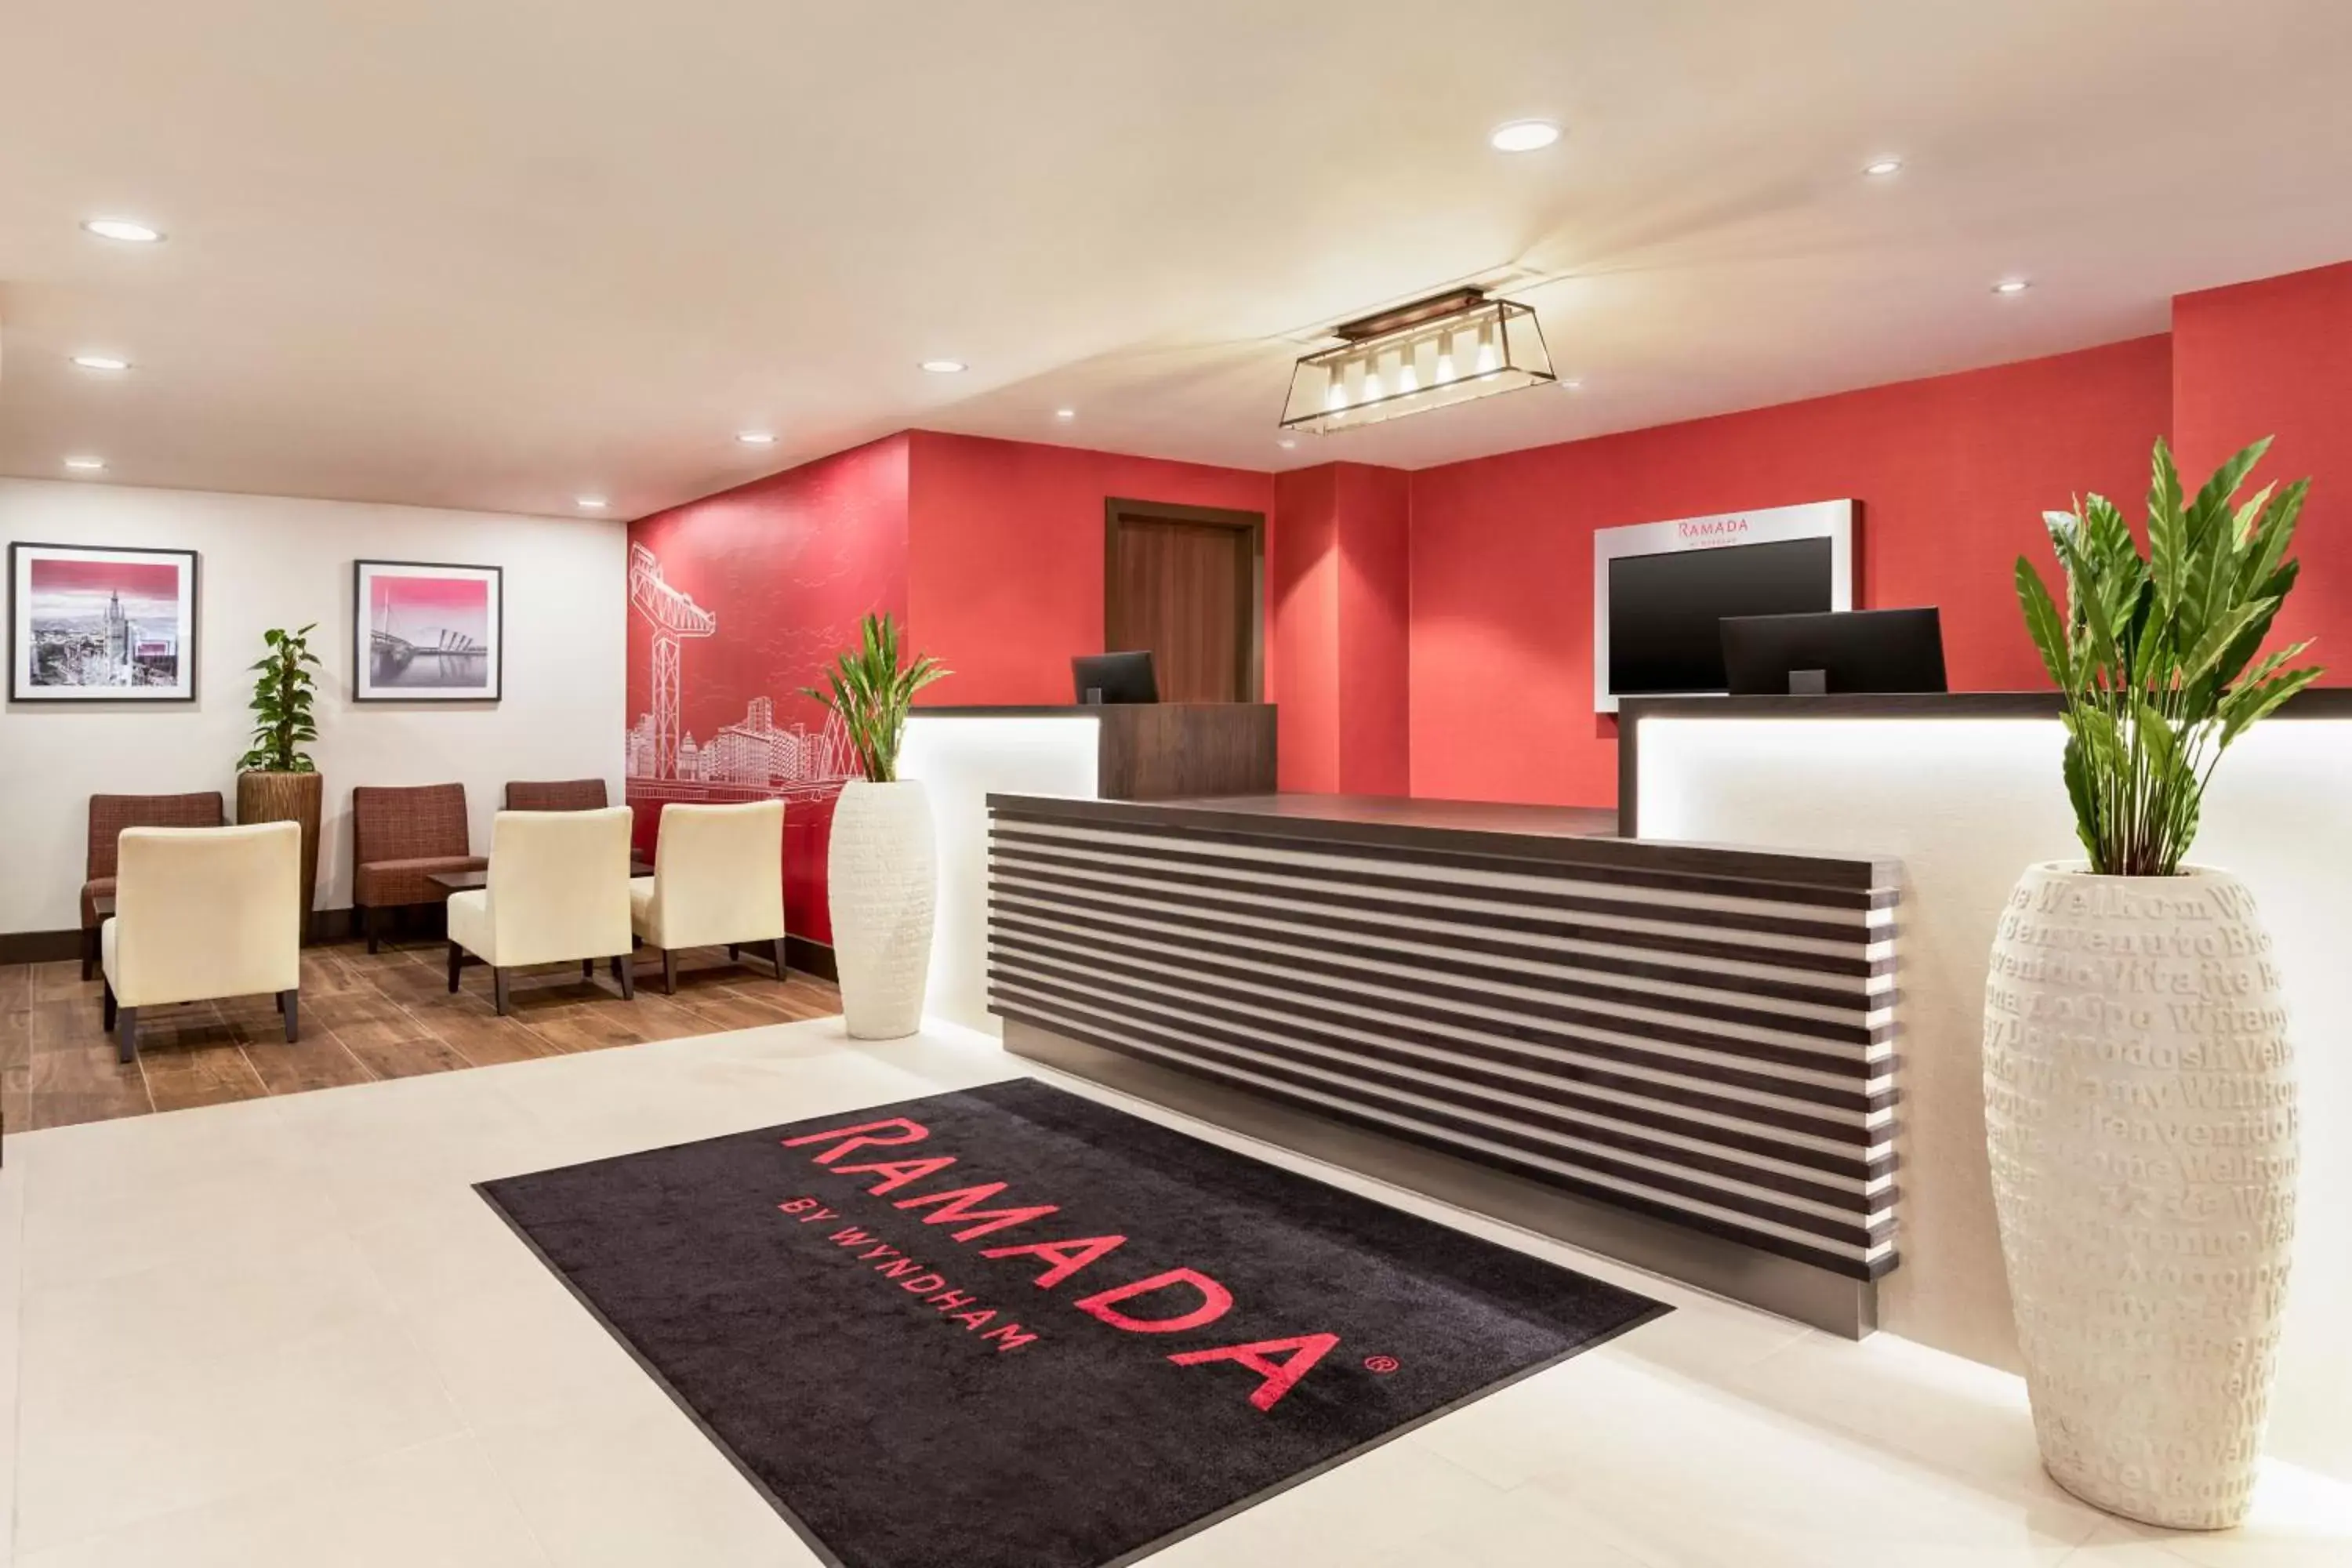 Lobby or reception, Lobby/Reception in Ramada by Wyndham East Kilbride